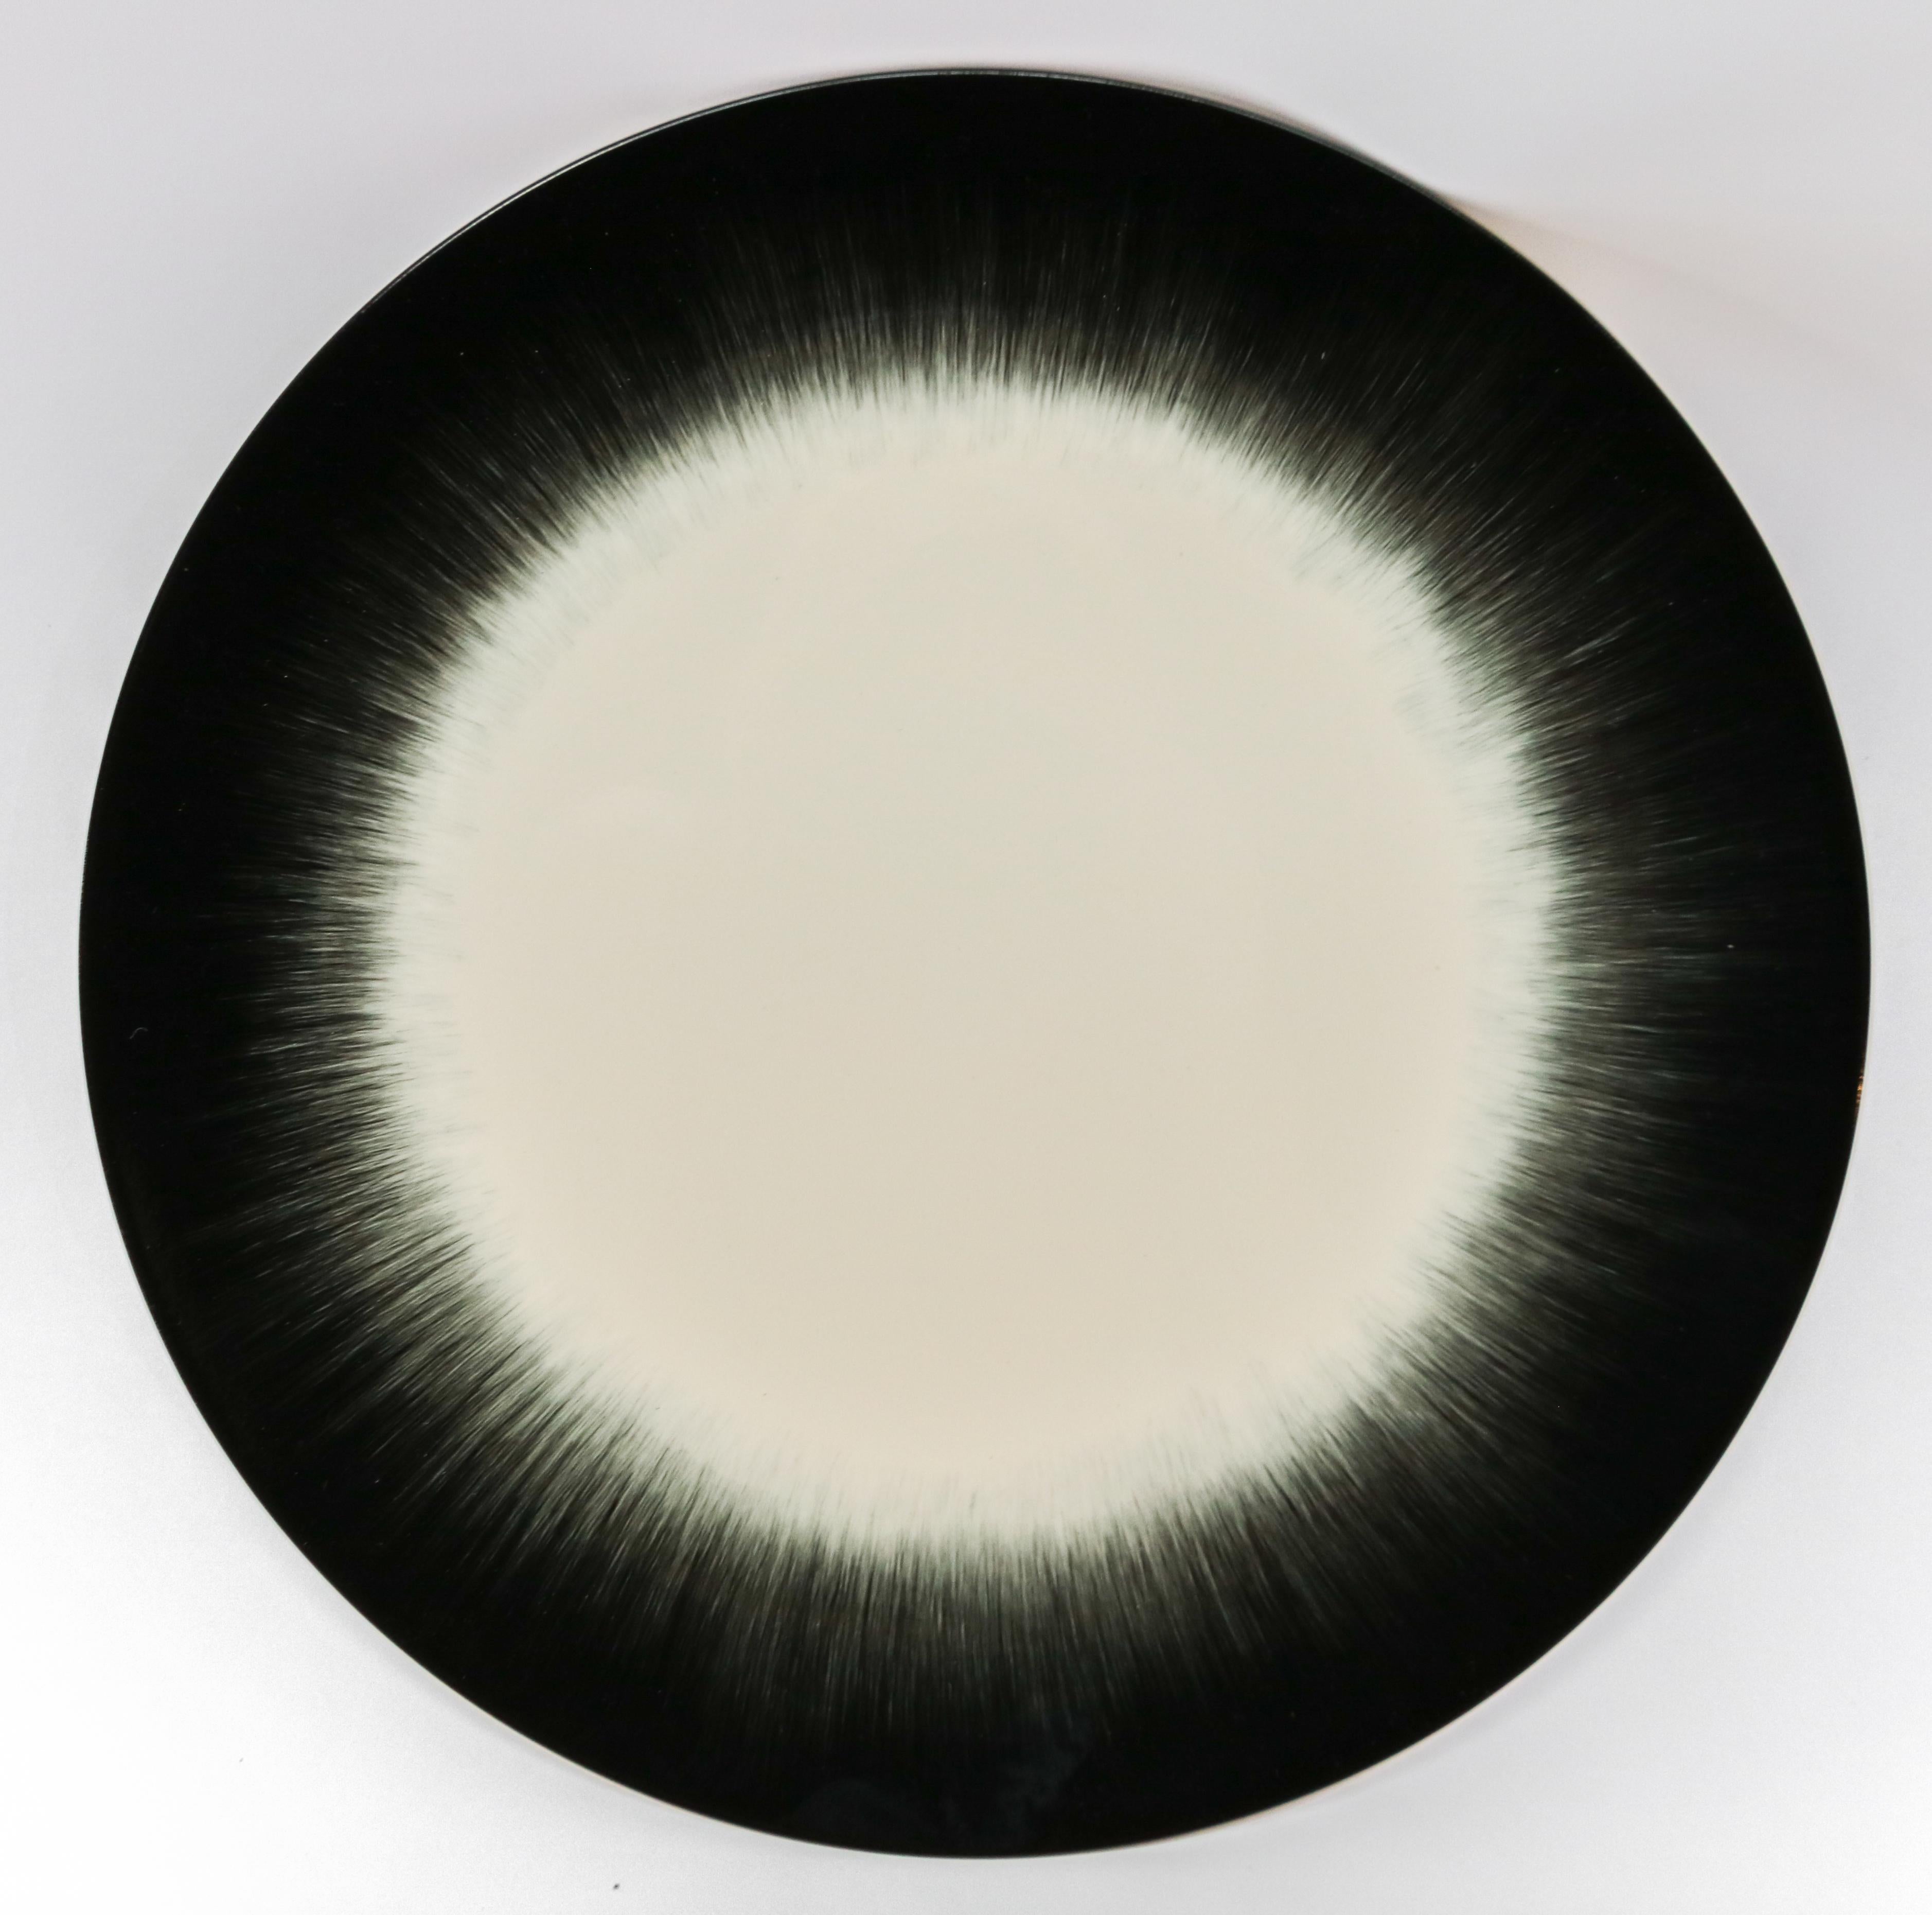 Ann Demeulemeester for Serax Dé Dinner Plate in off White / Black 1